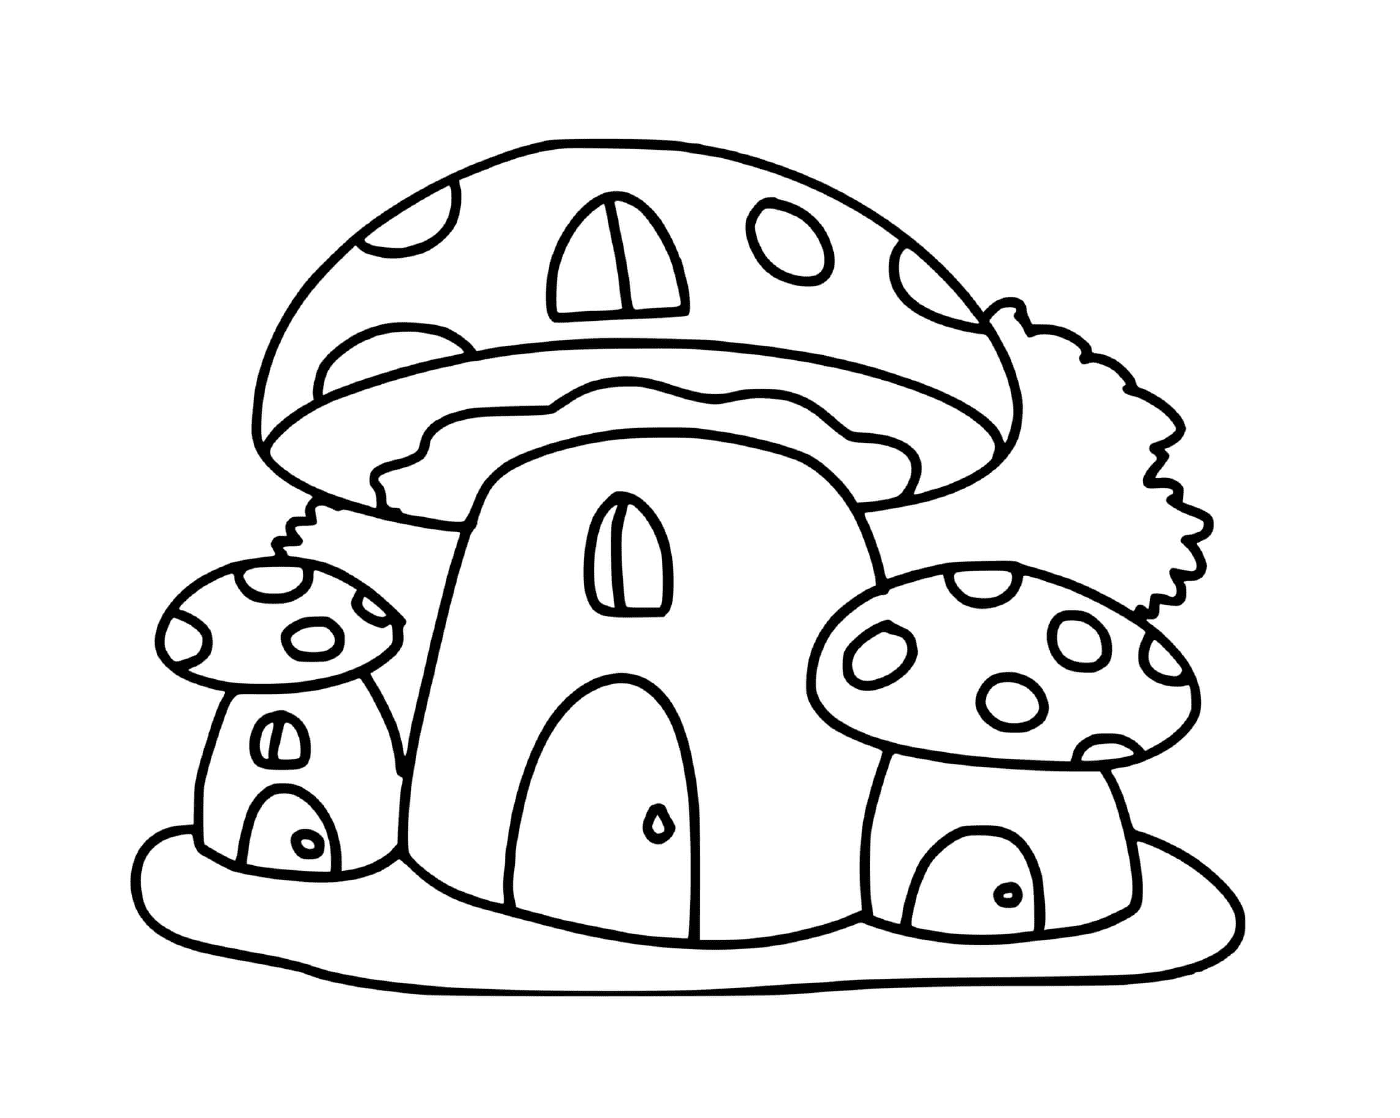  Дома в форме грибка, волшебная сцена 